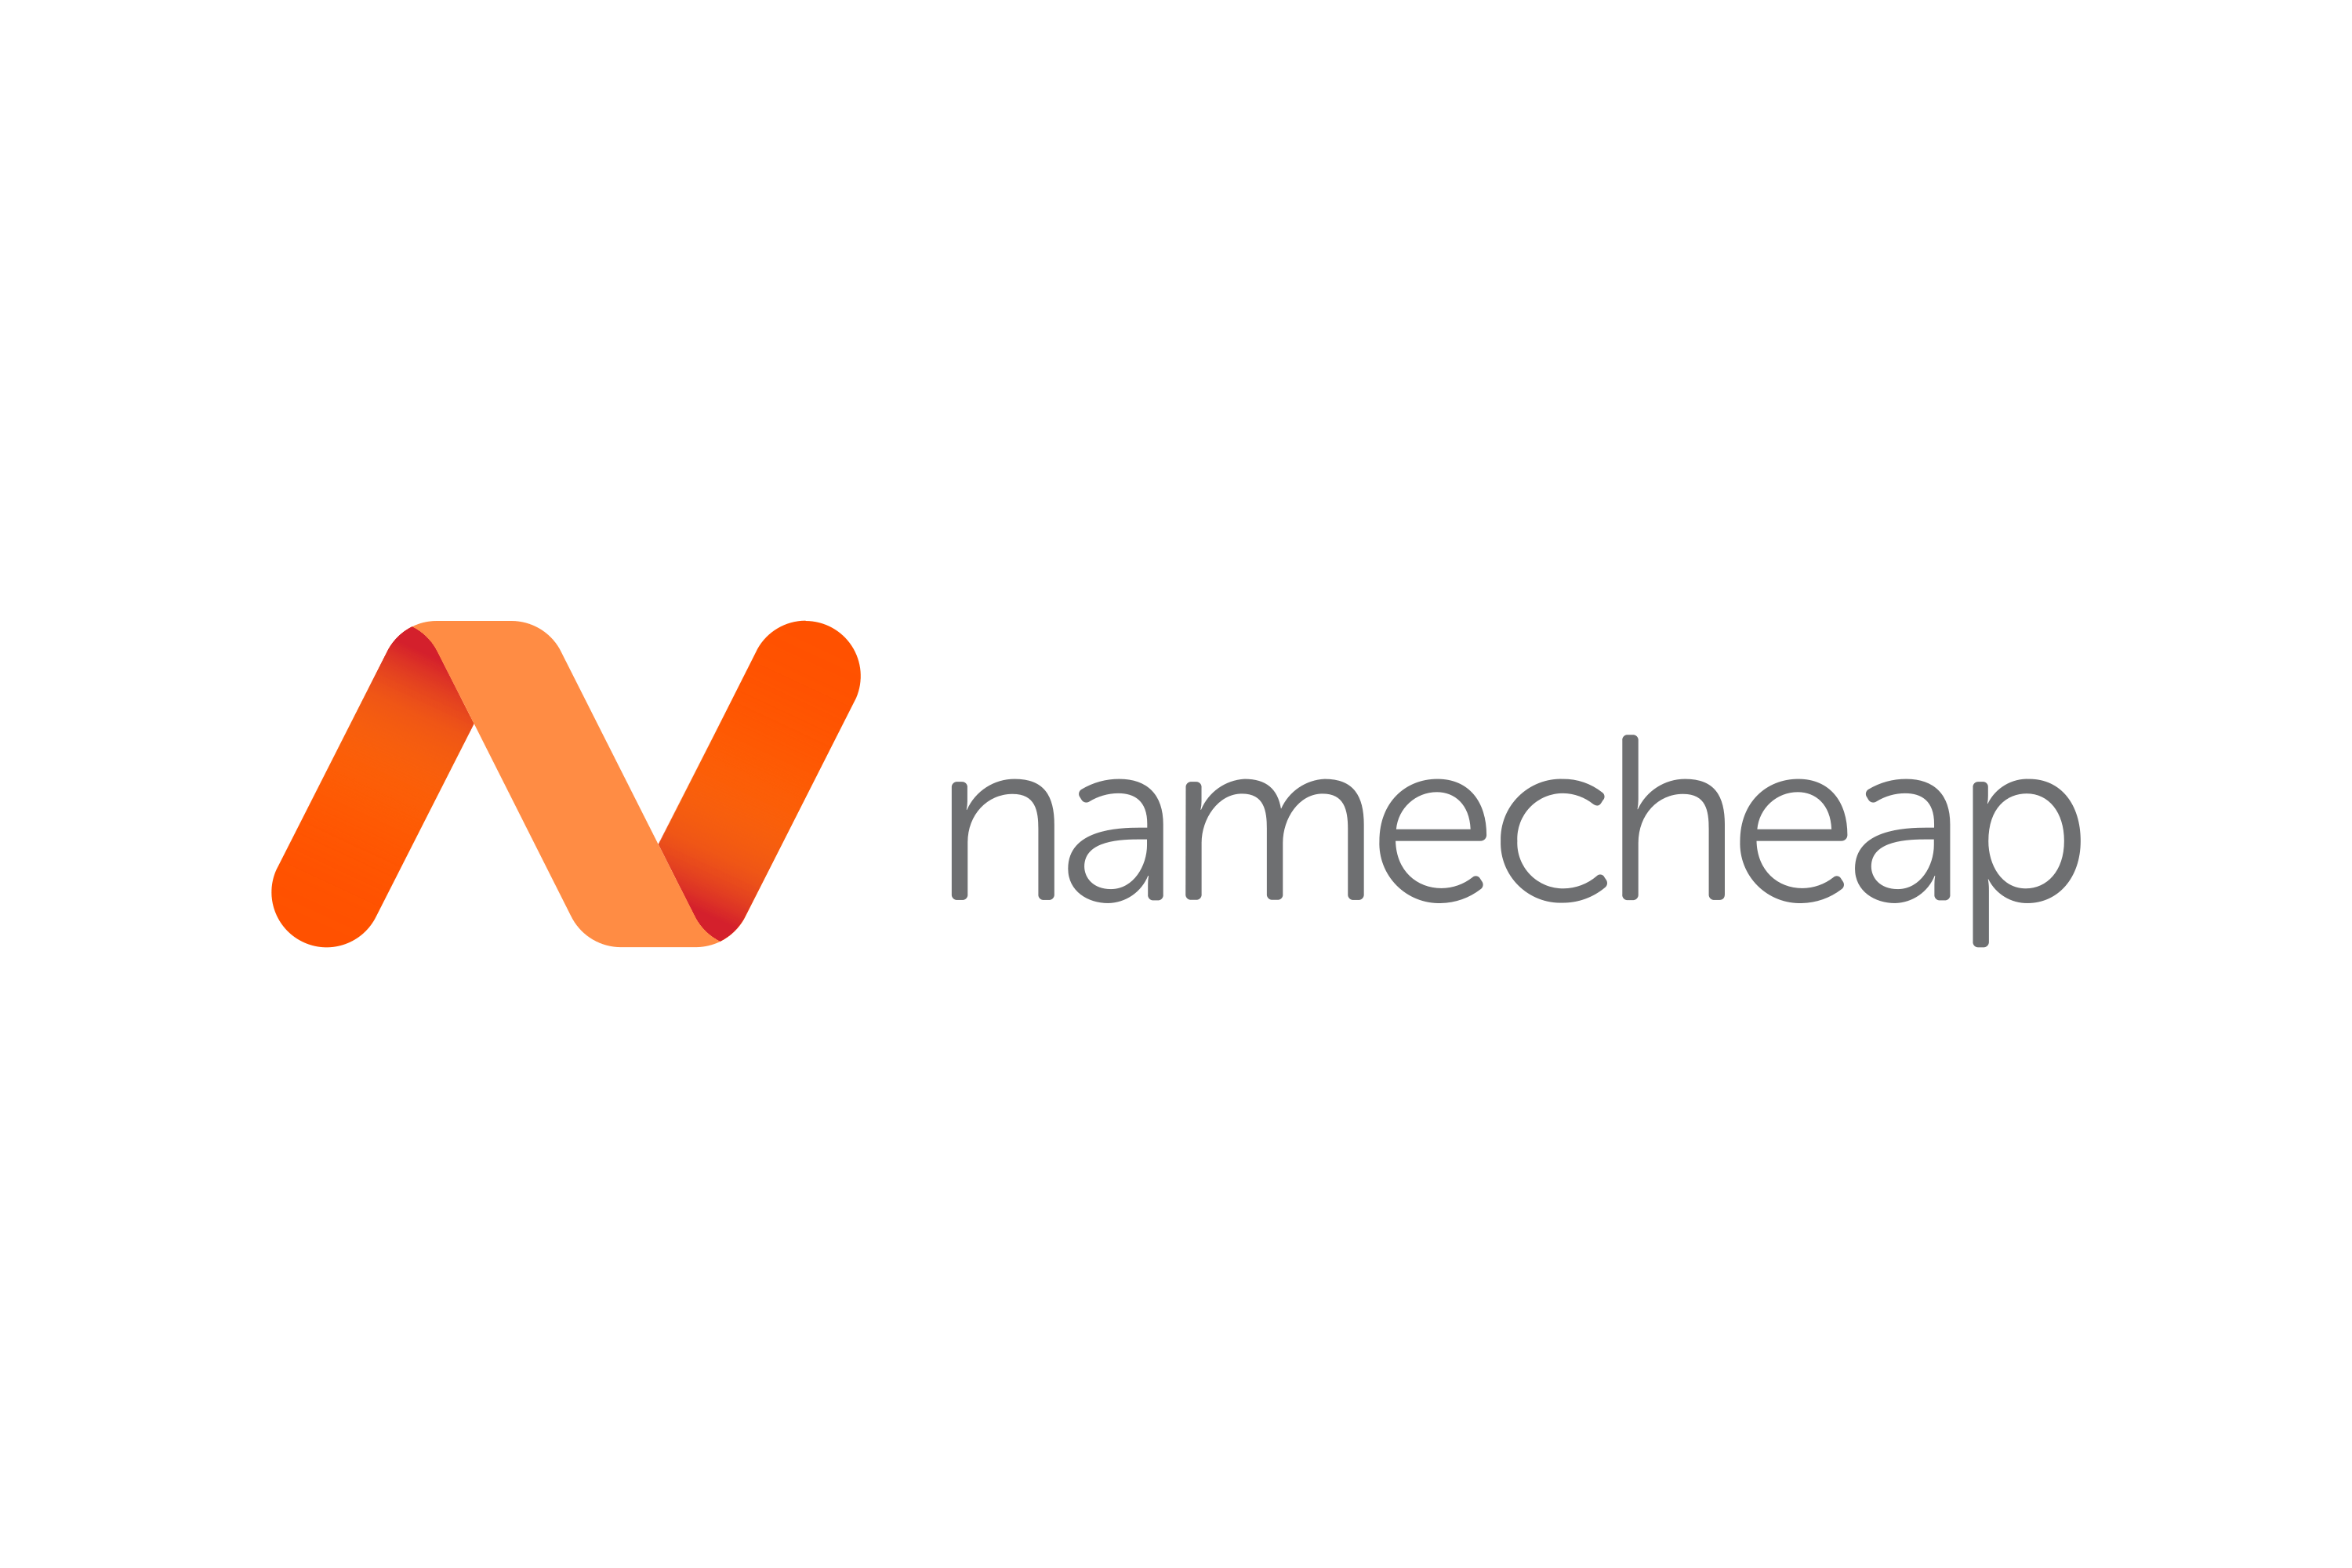 Namecheap.com के लिए प्रॉक्सी